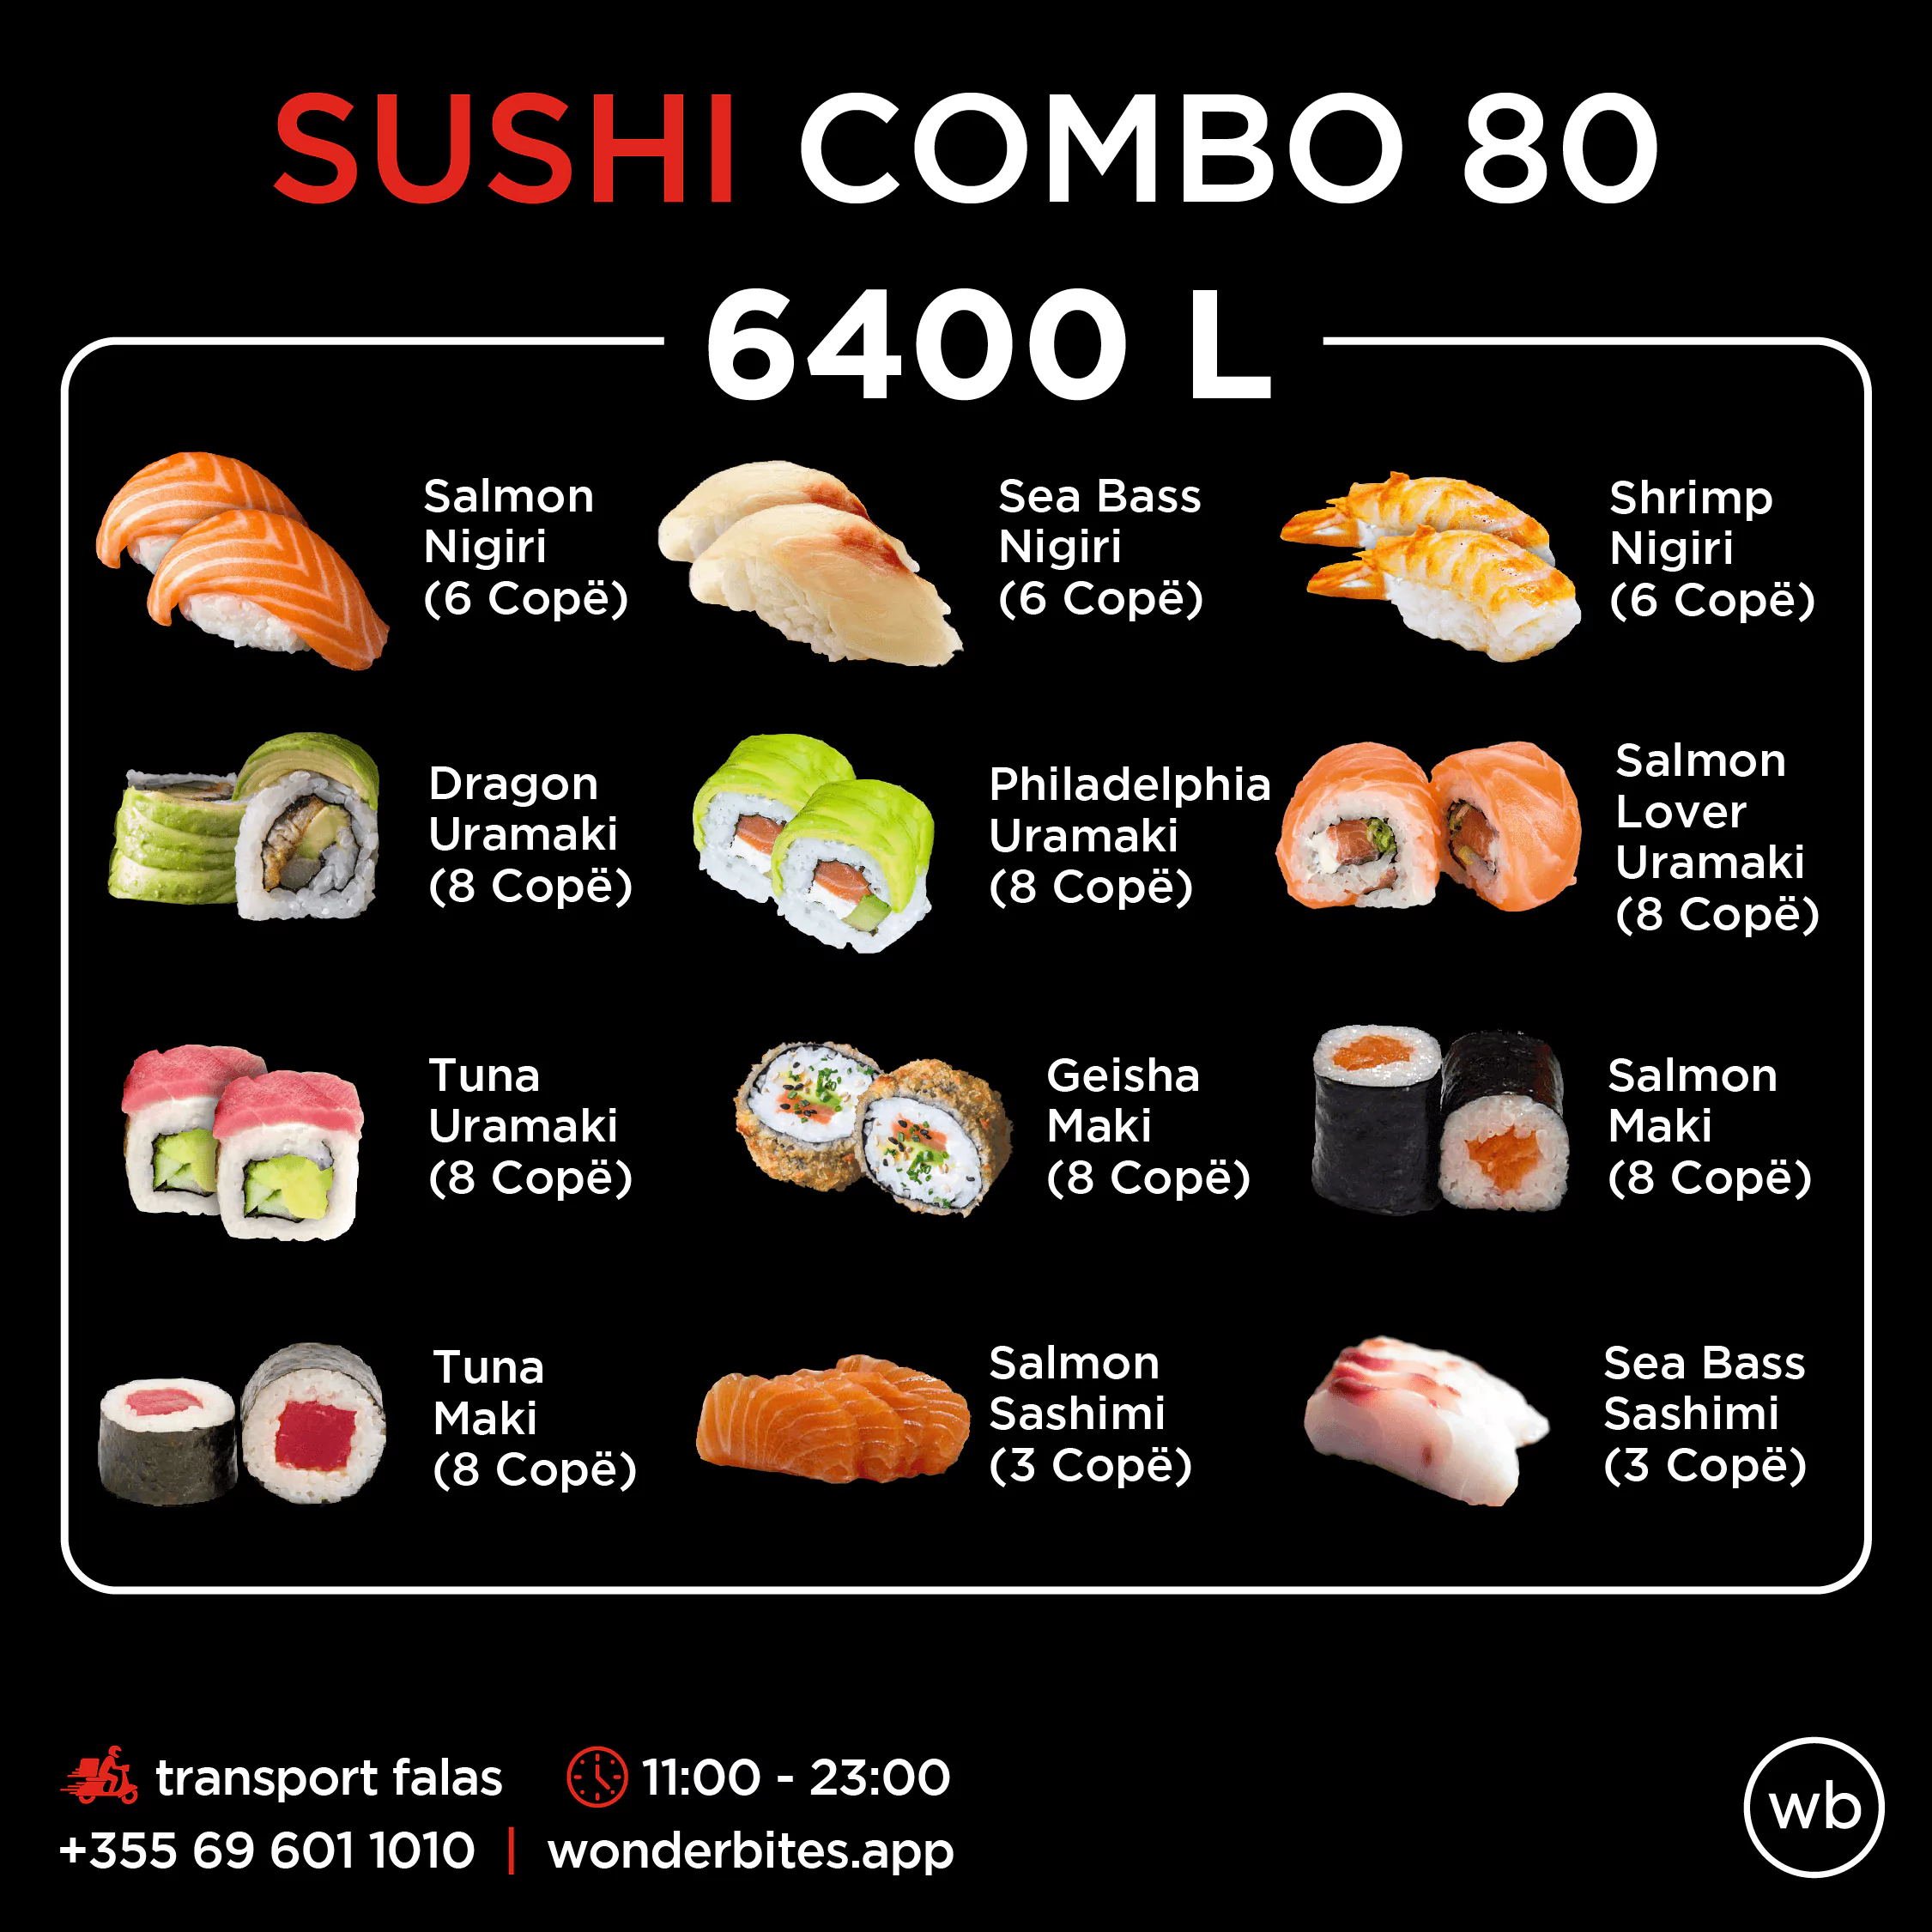 Sushi combo 80-6400L